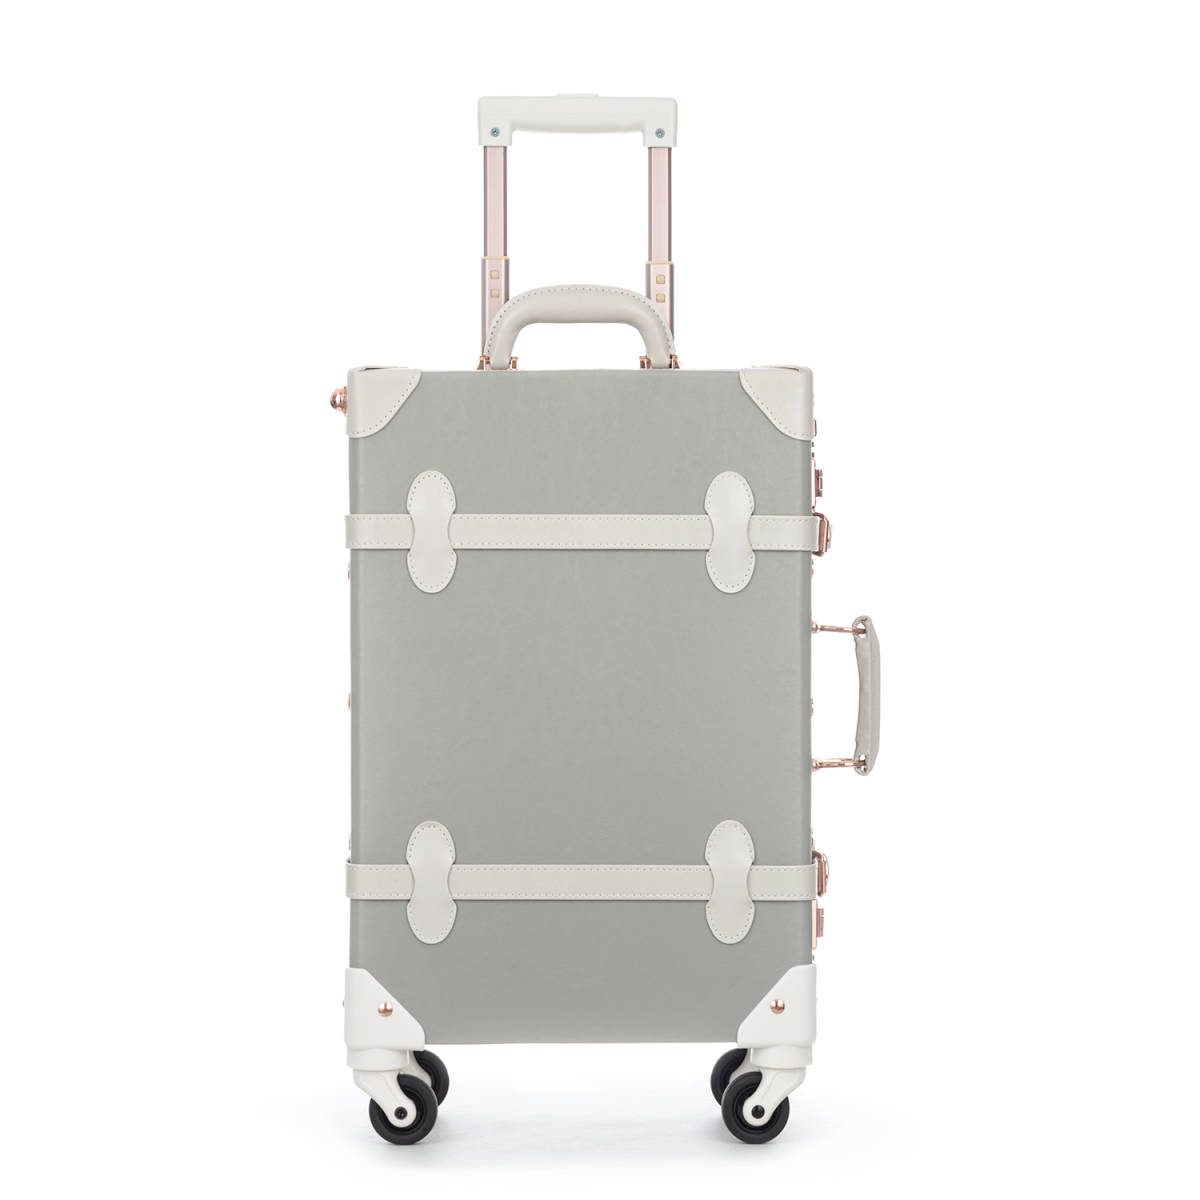 キャリーケース スーツケース Sサイズ 透明カバー付き 1~3泊 24L 防水 静音 小型 軽量 機内持ち込み かわいい 旅行 修学 女性 グレー